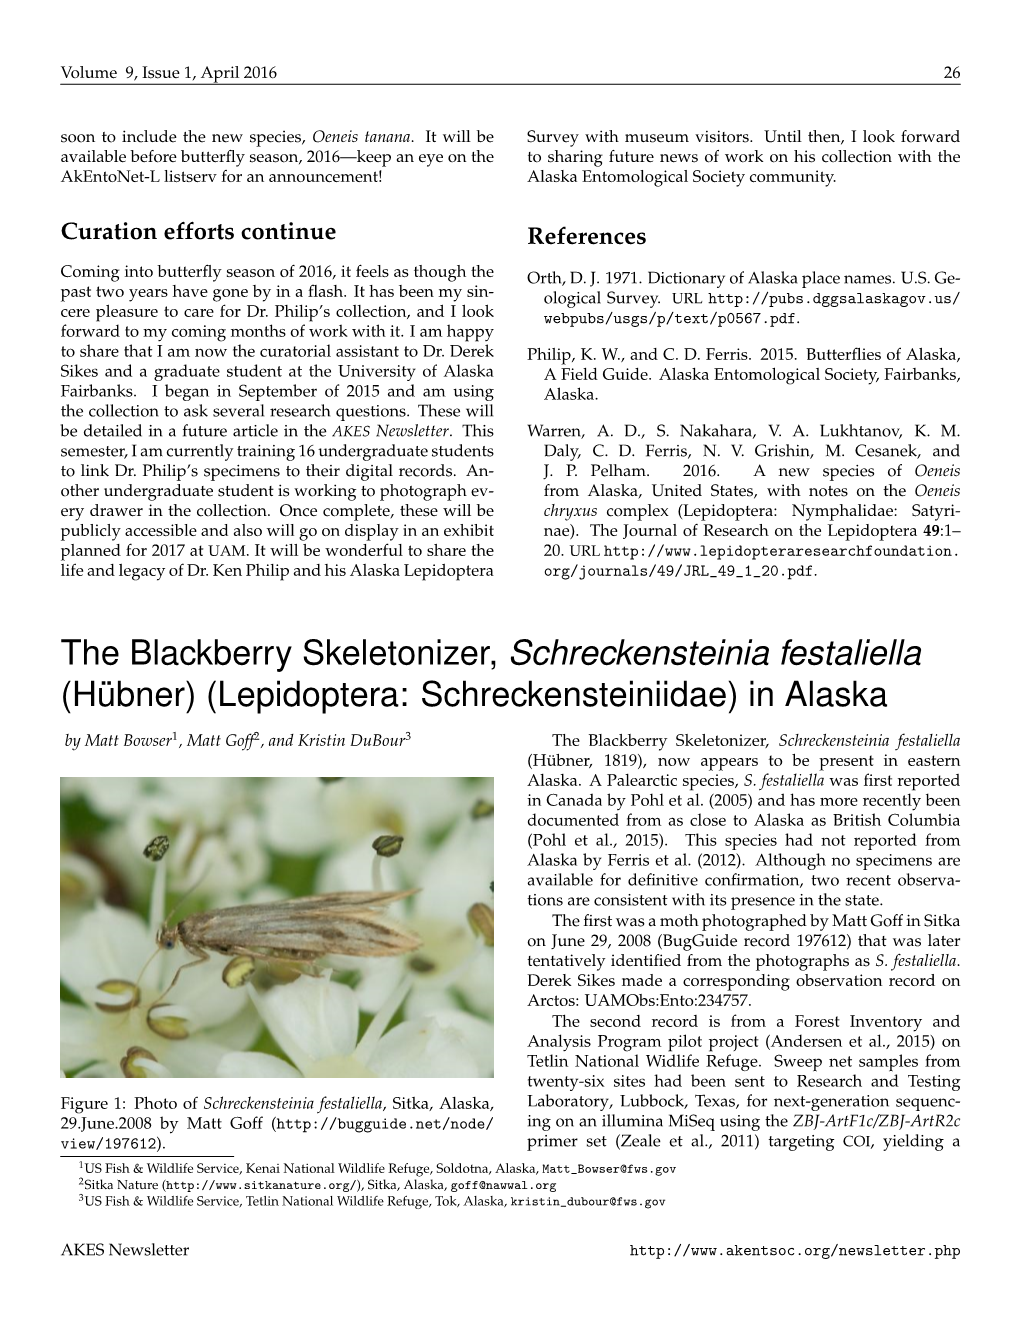 The Blackberry Skeletonizer, Schreckensteinia Festaliella (Hübner) (Lepidoptera: Schreckensteiniidae) in Alaska